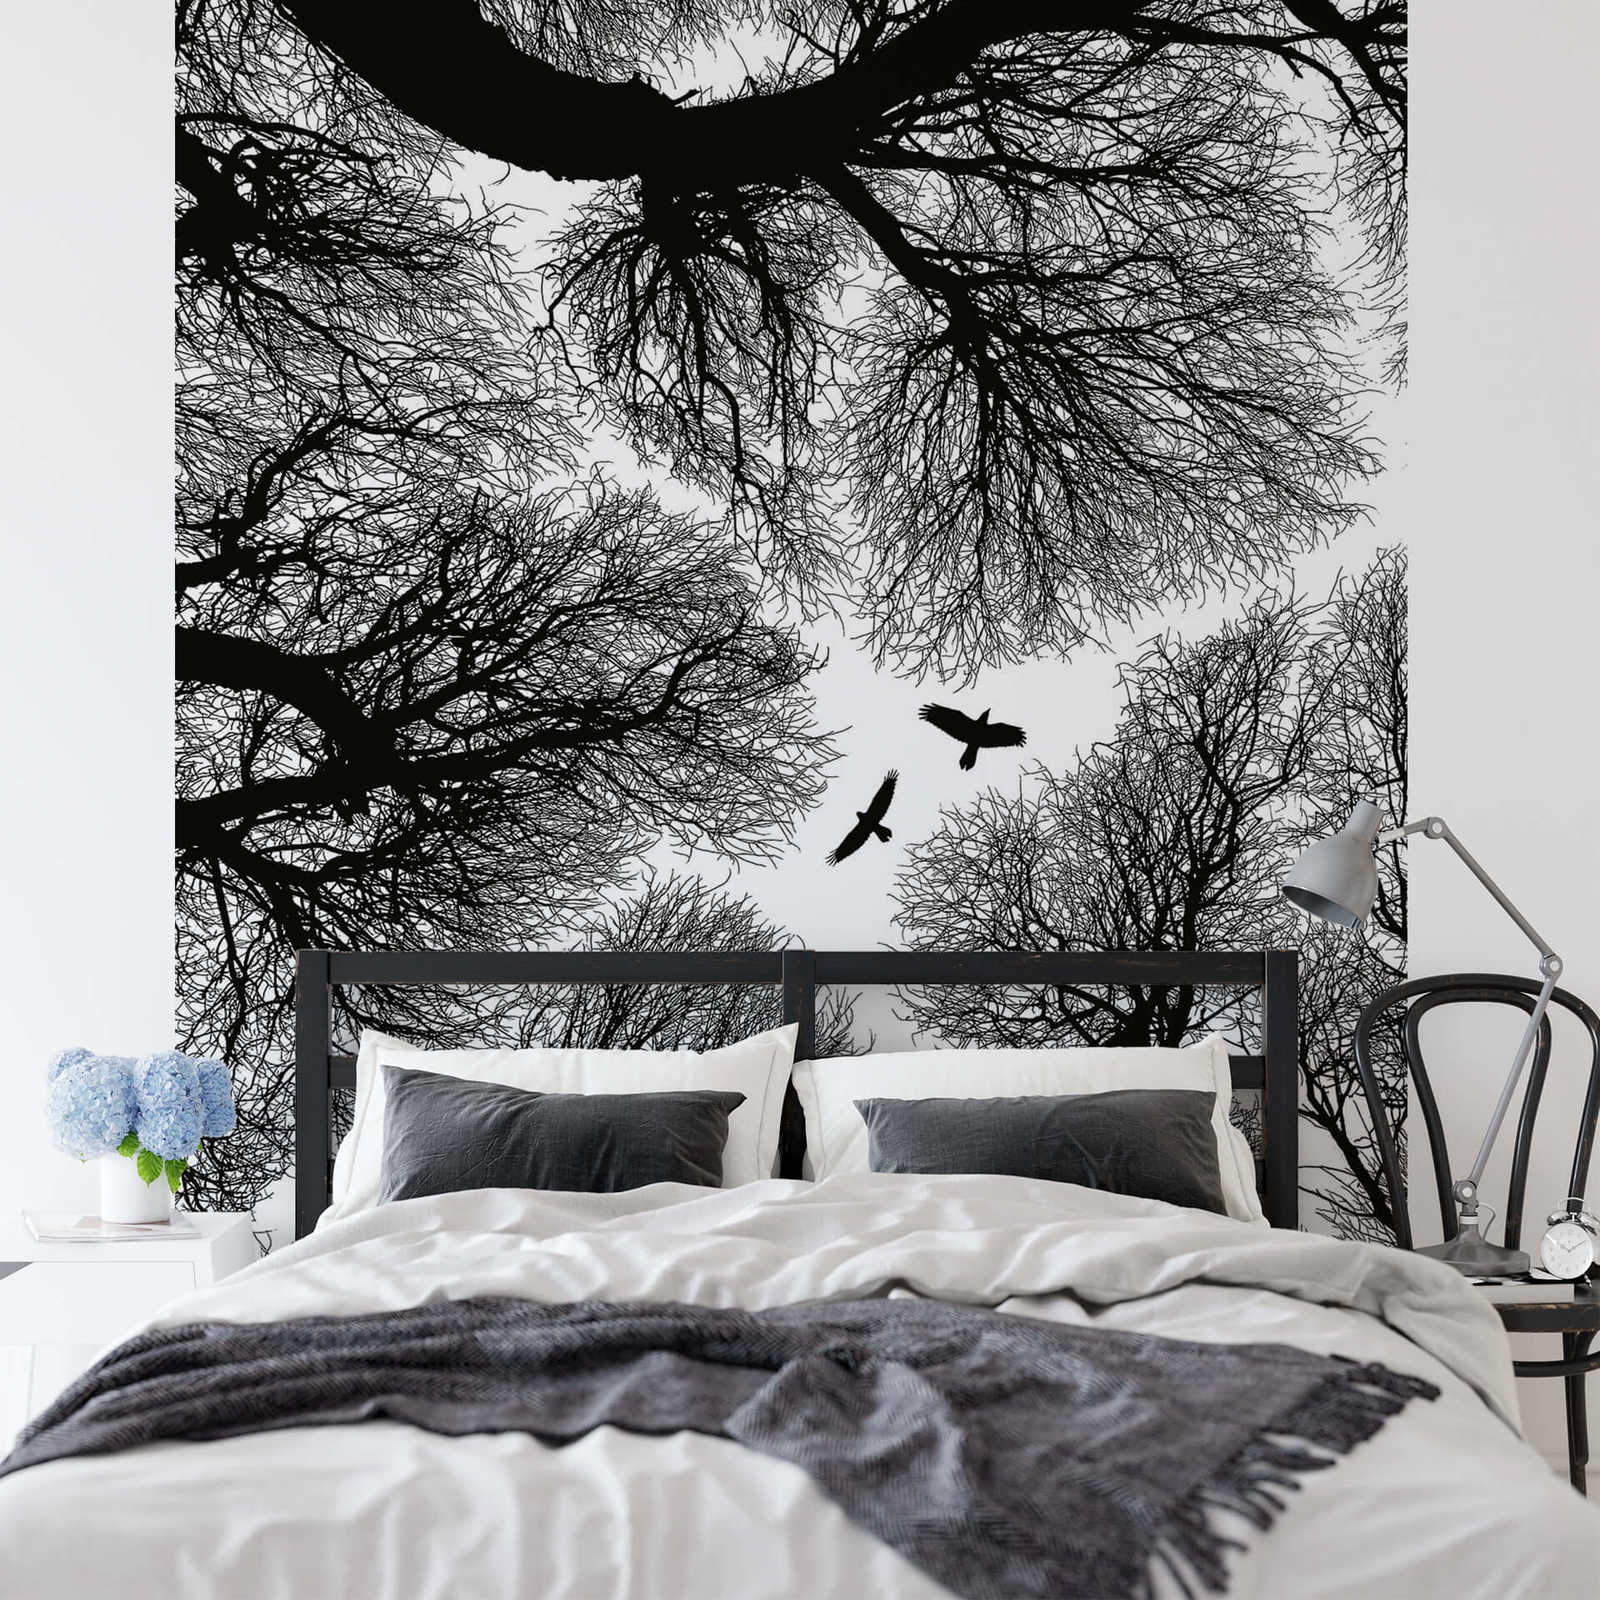             Papier peint panoramique étroit couronne d'arbre - noir, blanc
        